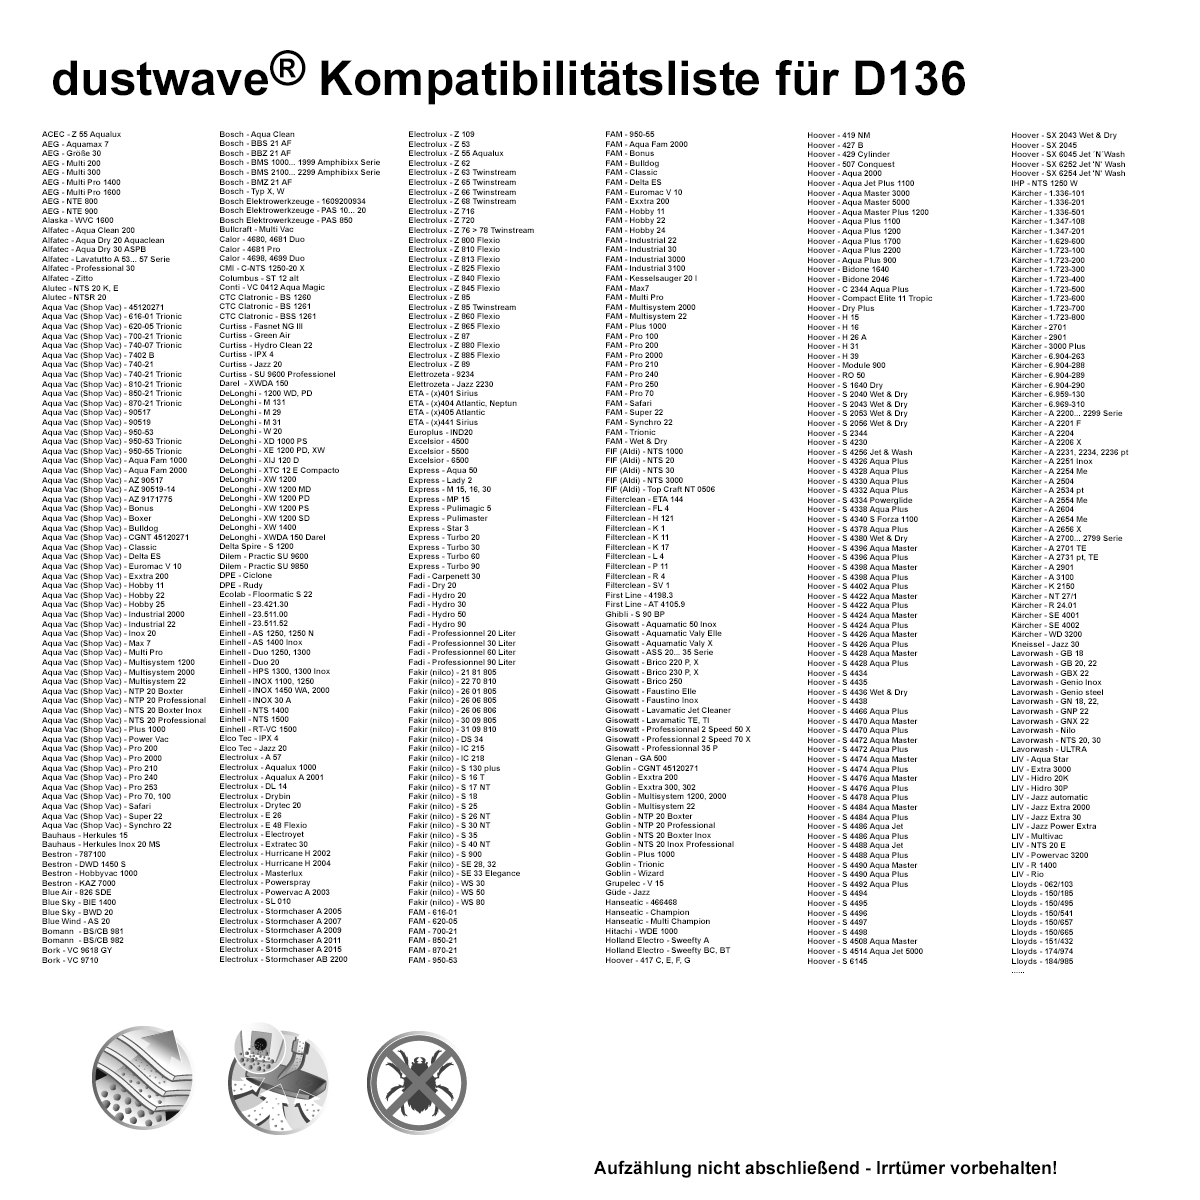 Dustwave® 20 Staubsaugerbeutel für Hoover S4508 Aqua Master - hocheffizient, mehrlagiges Mikrovlies mit Hygieneverschluss - Made in Germany